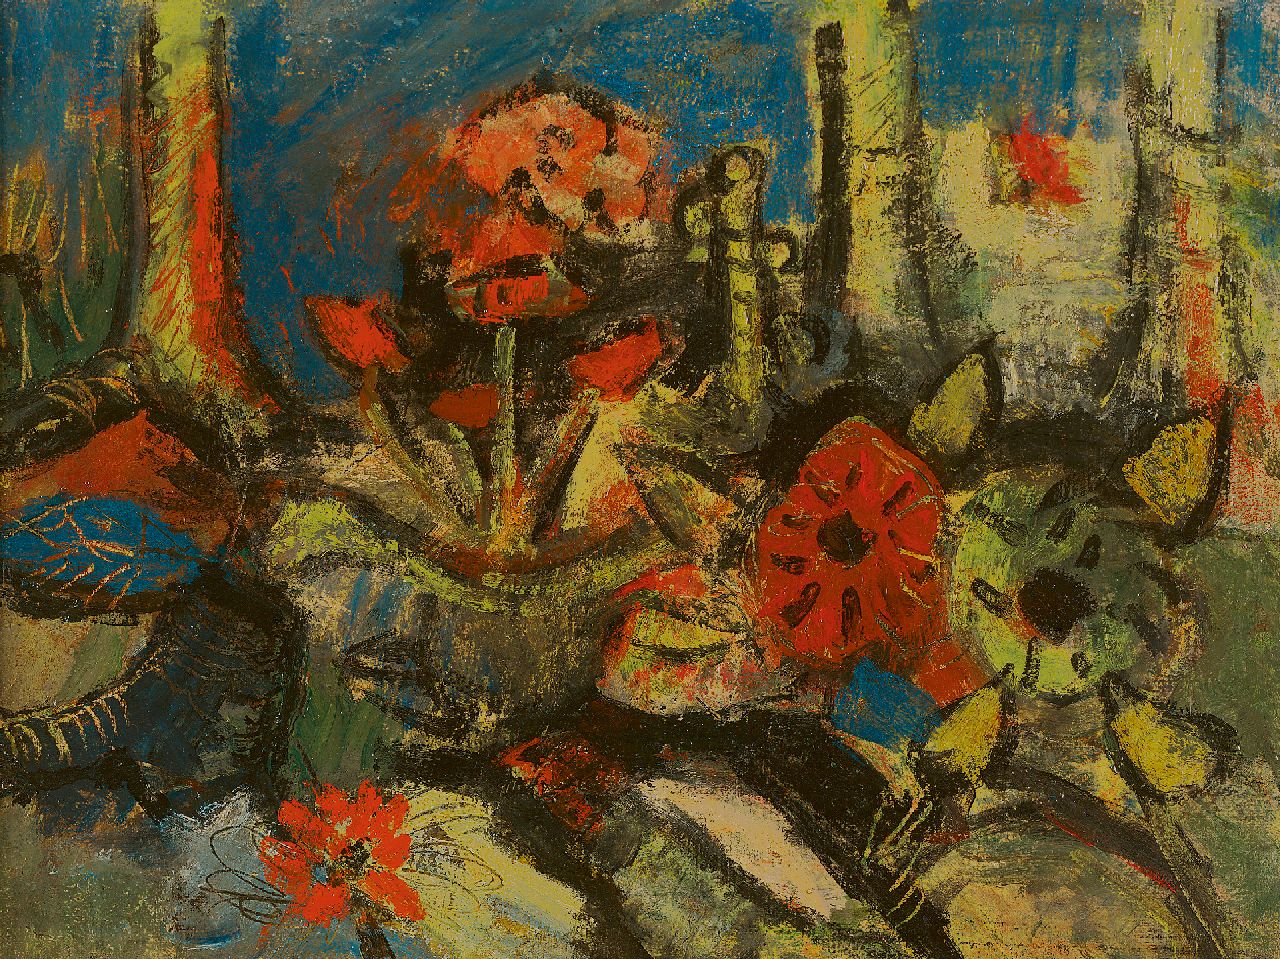 Kruyder H.J.  | 'Herman' Justus Kruyder | Schilderijen te koop aangeboden | Bloemen en bomen, olieverf op doek 30,7 x 40,4 cm, te dateren ca. 1925